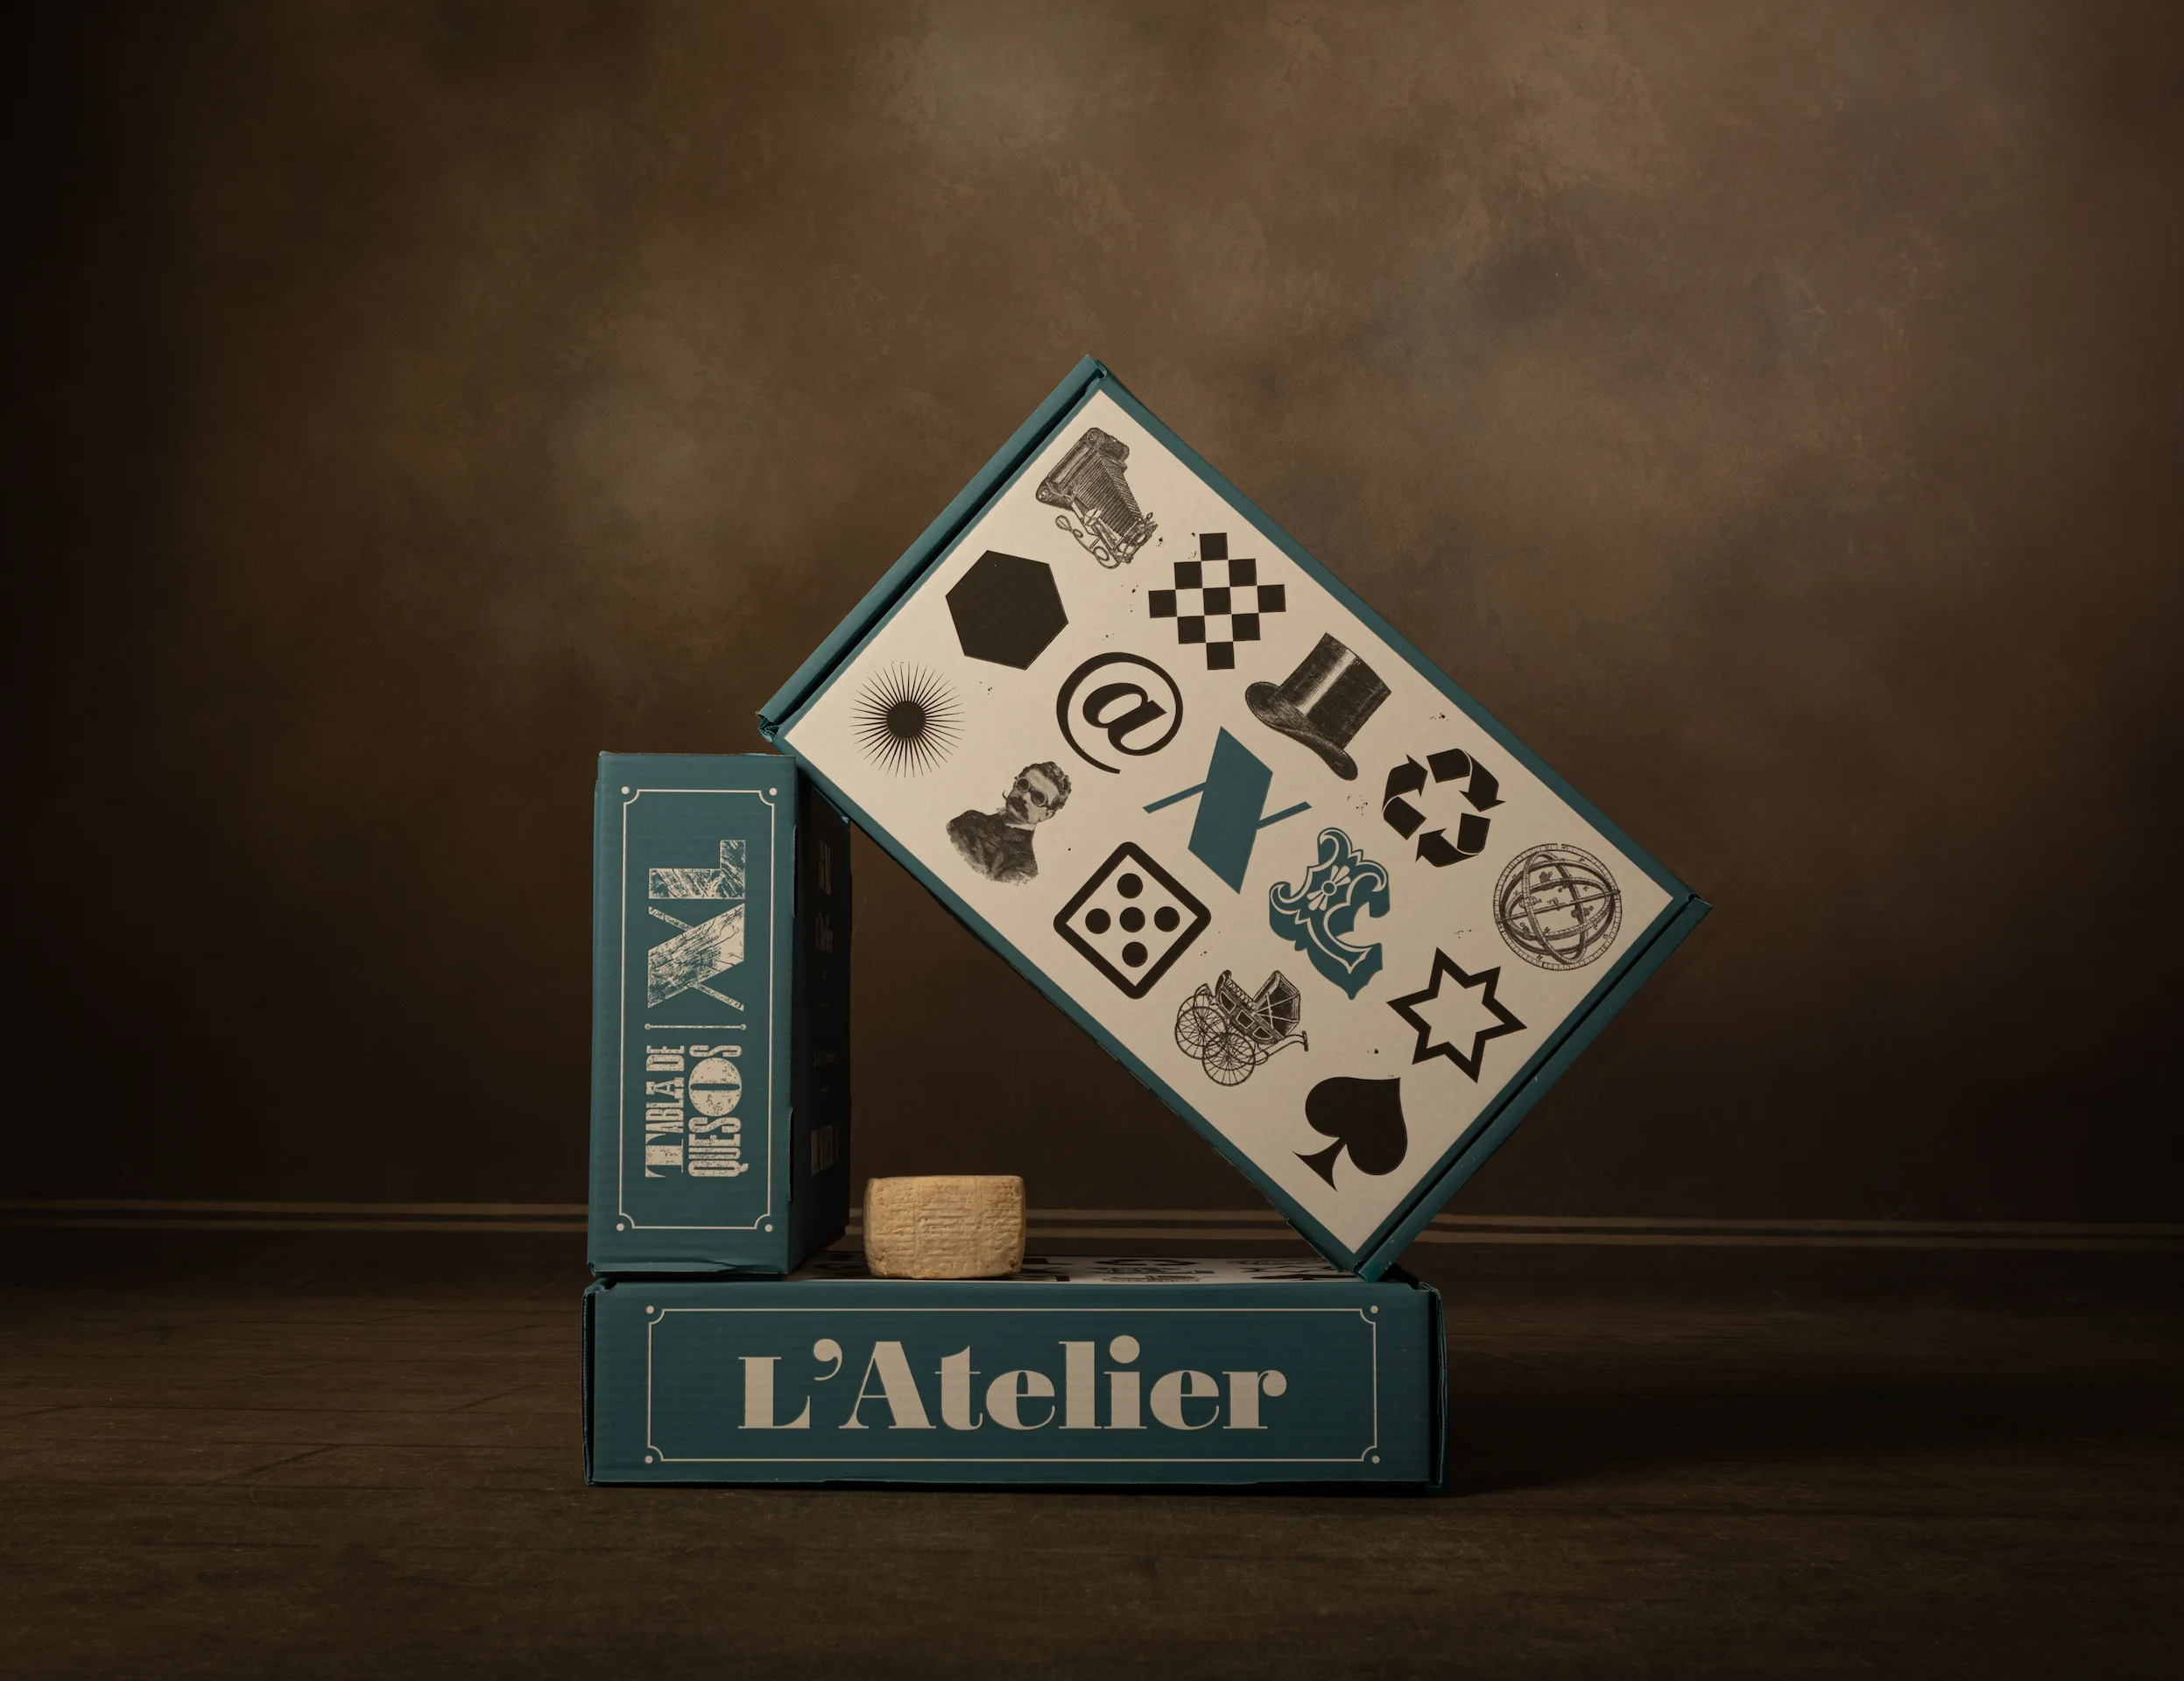 Imagen de laterales de varias cajas apiladas con detalle azul con el diseño de packaging de quesos L'Atelier con tipografía e iconografía de letterpress